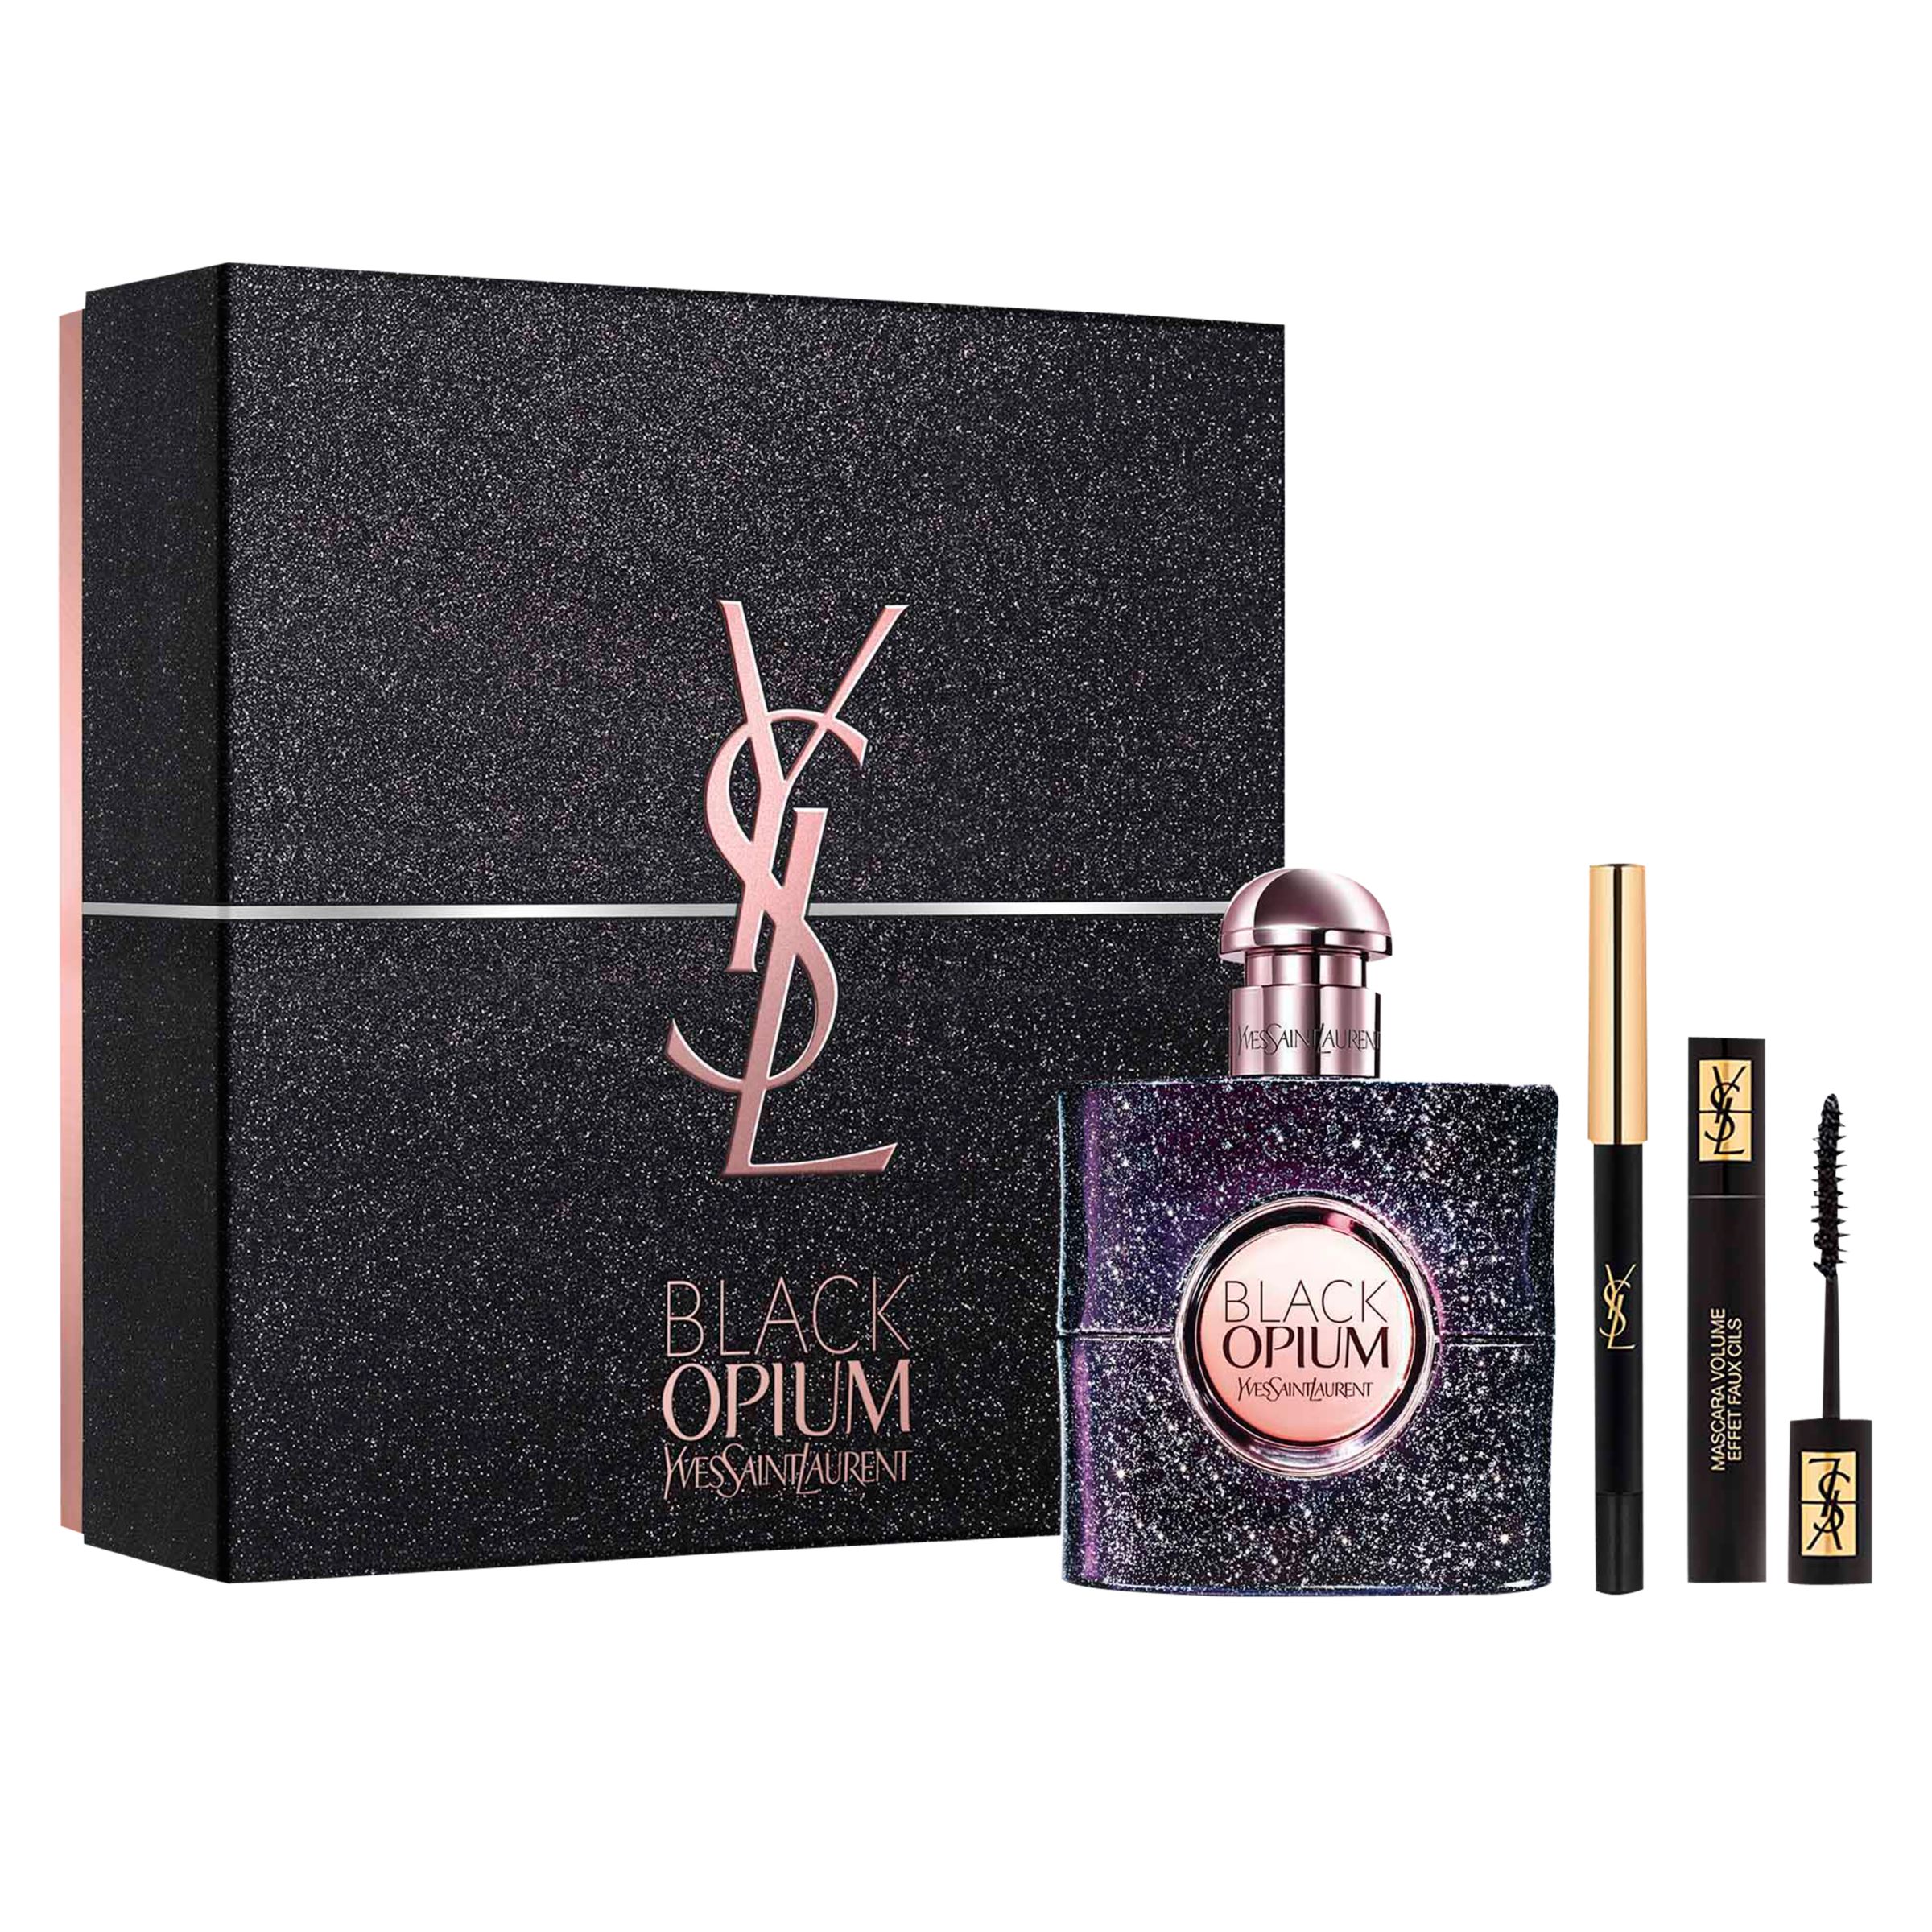 Yves Saint Laurent Black Opium Nuit Blanche 50ml Eau de Parfum Fragrance Gift Set